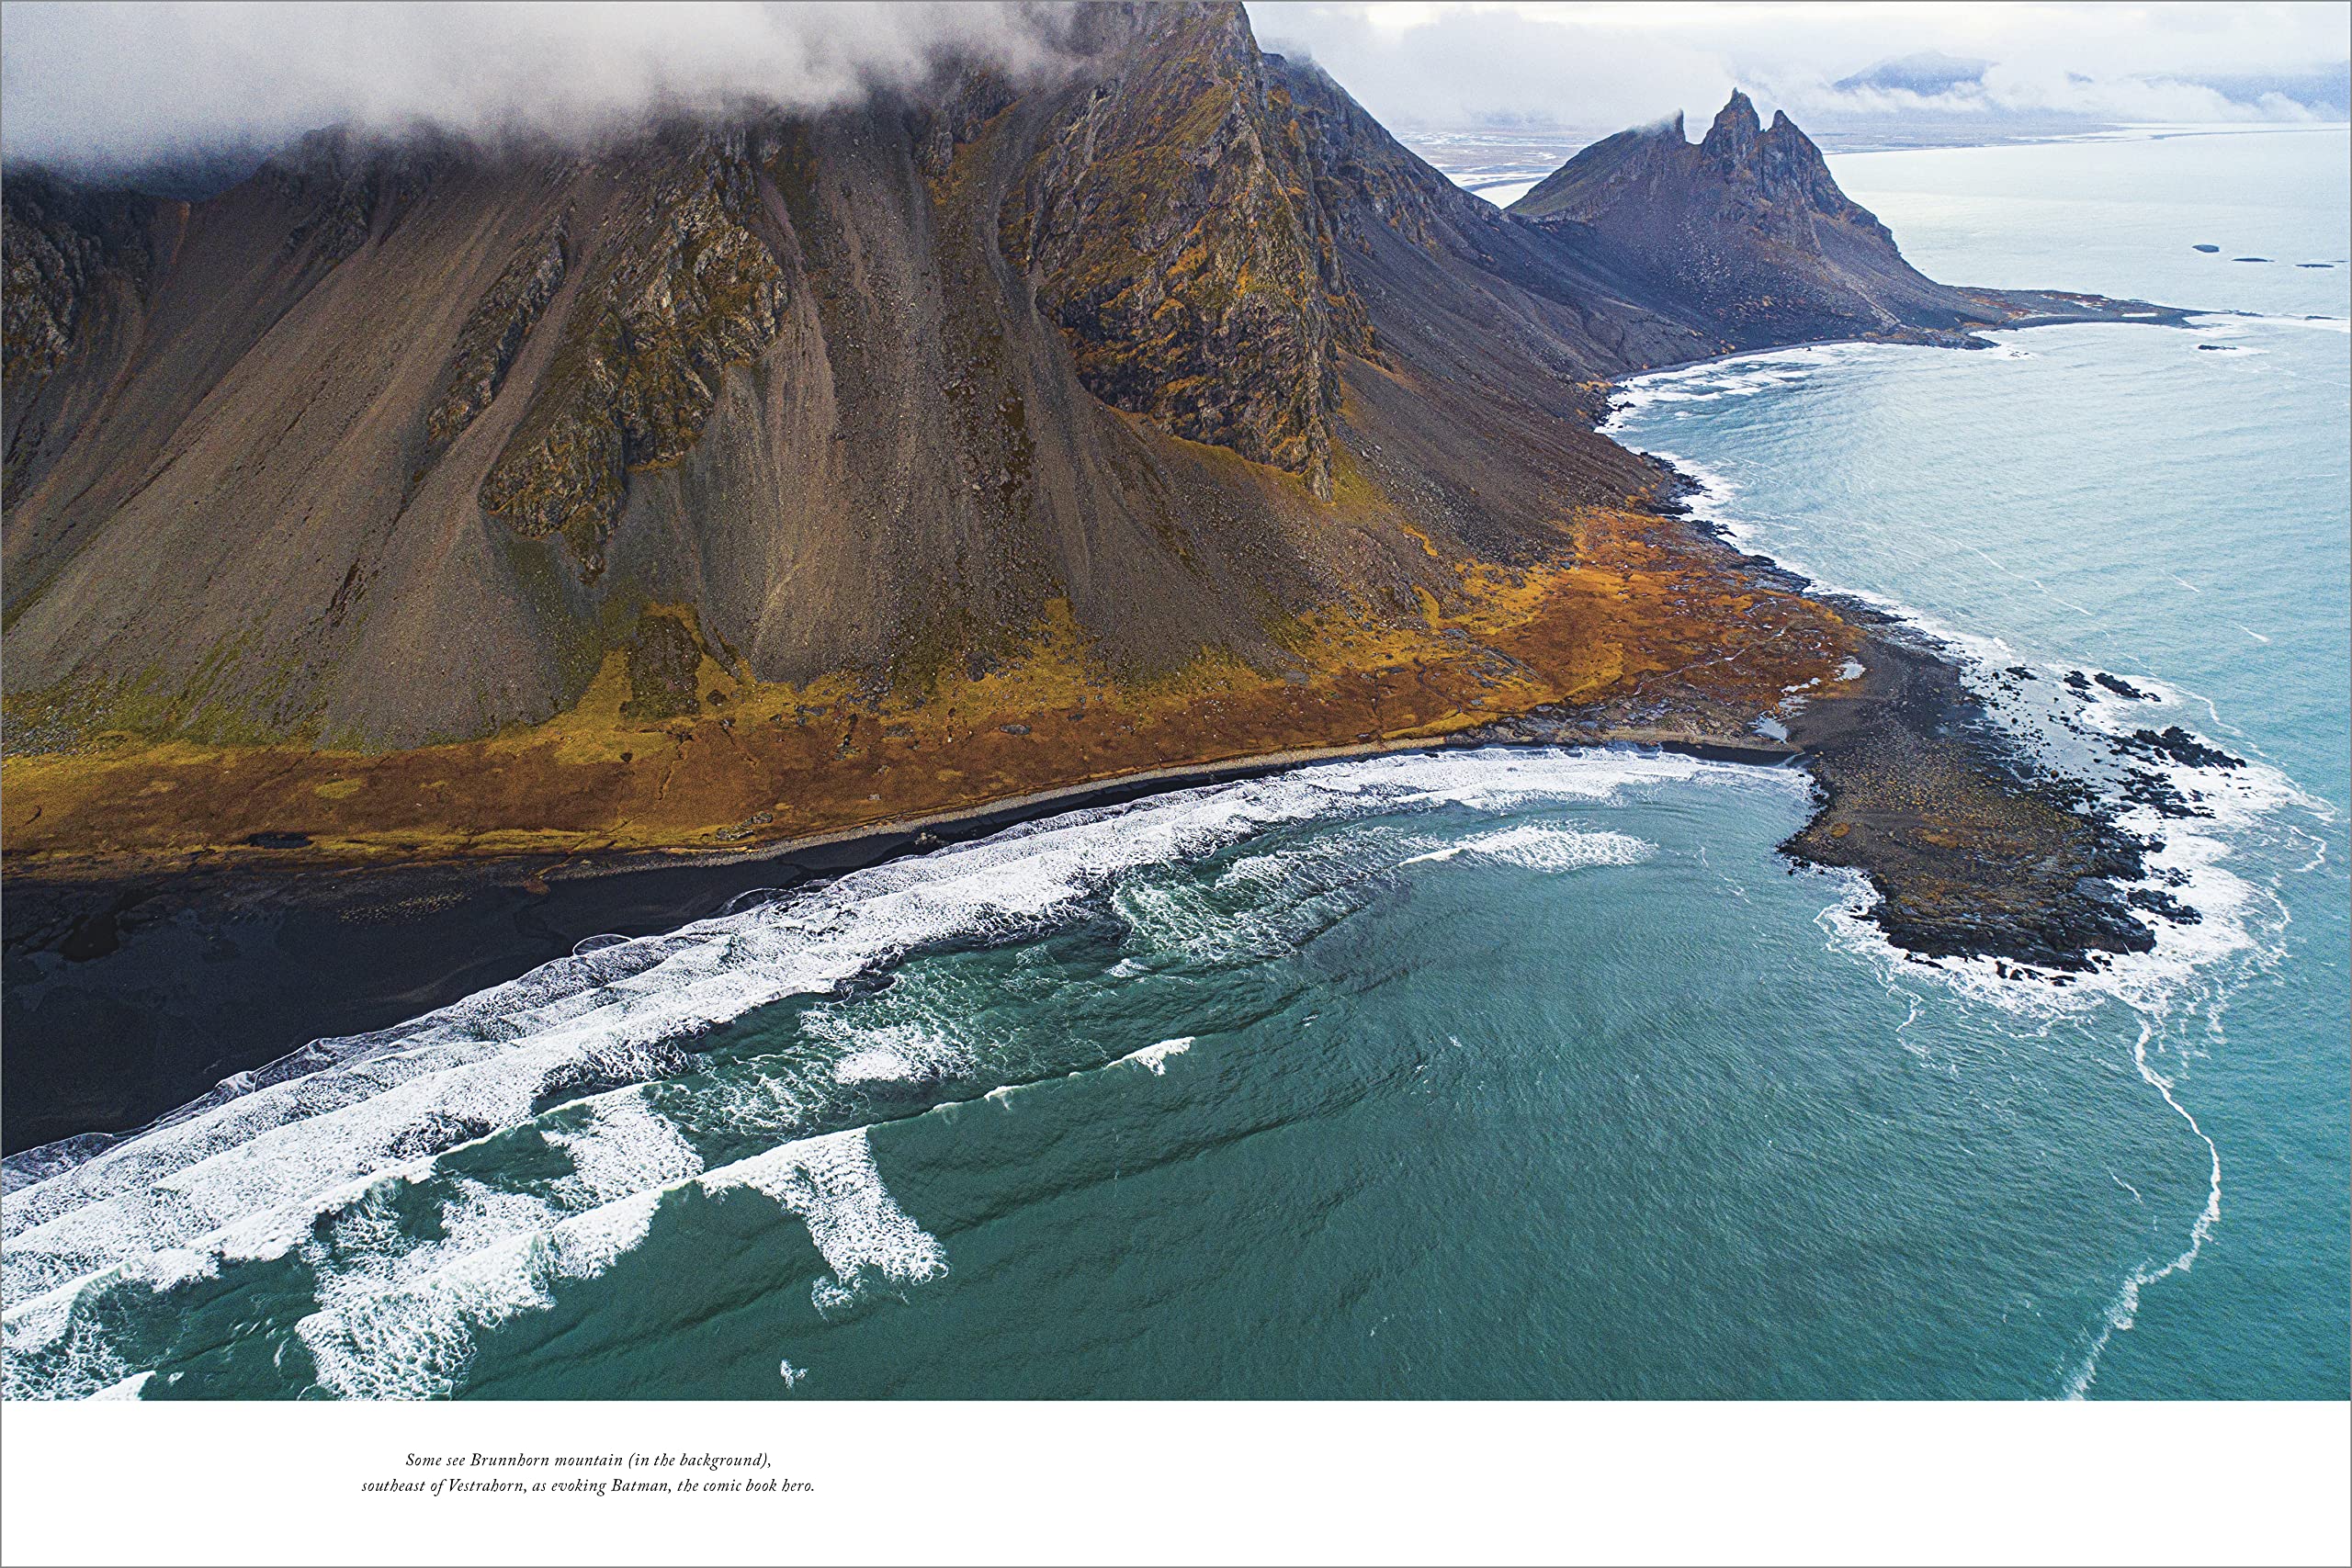 Stunning Iceland